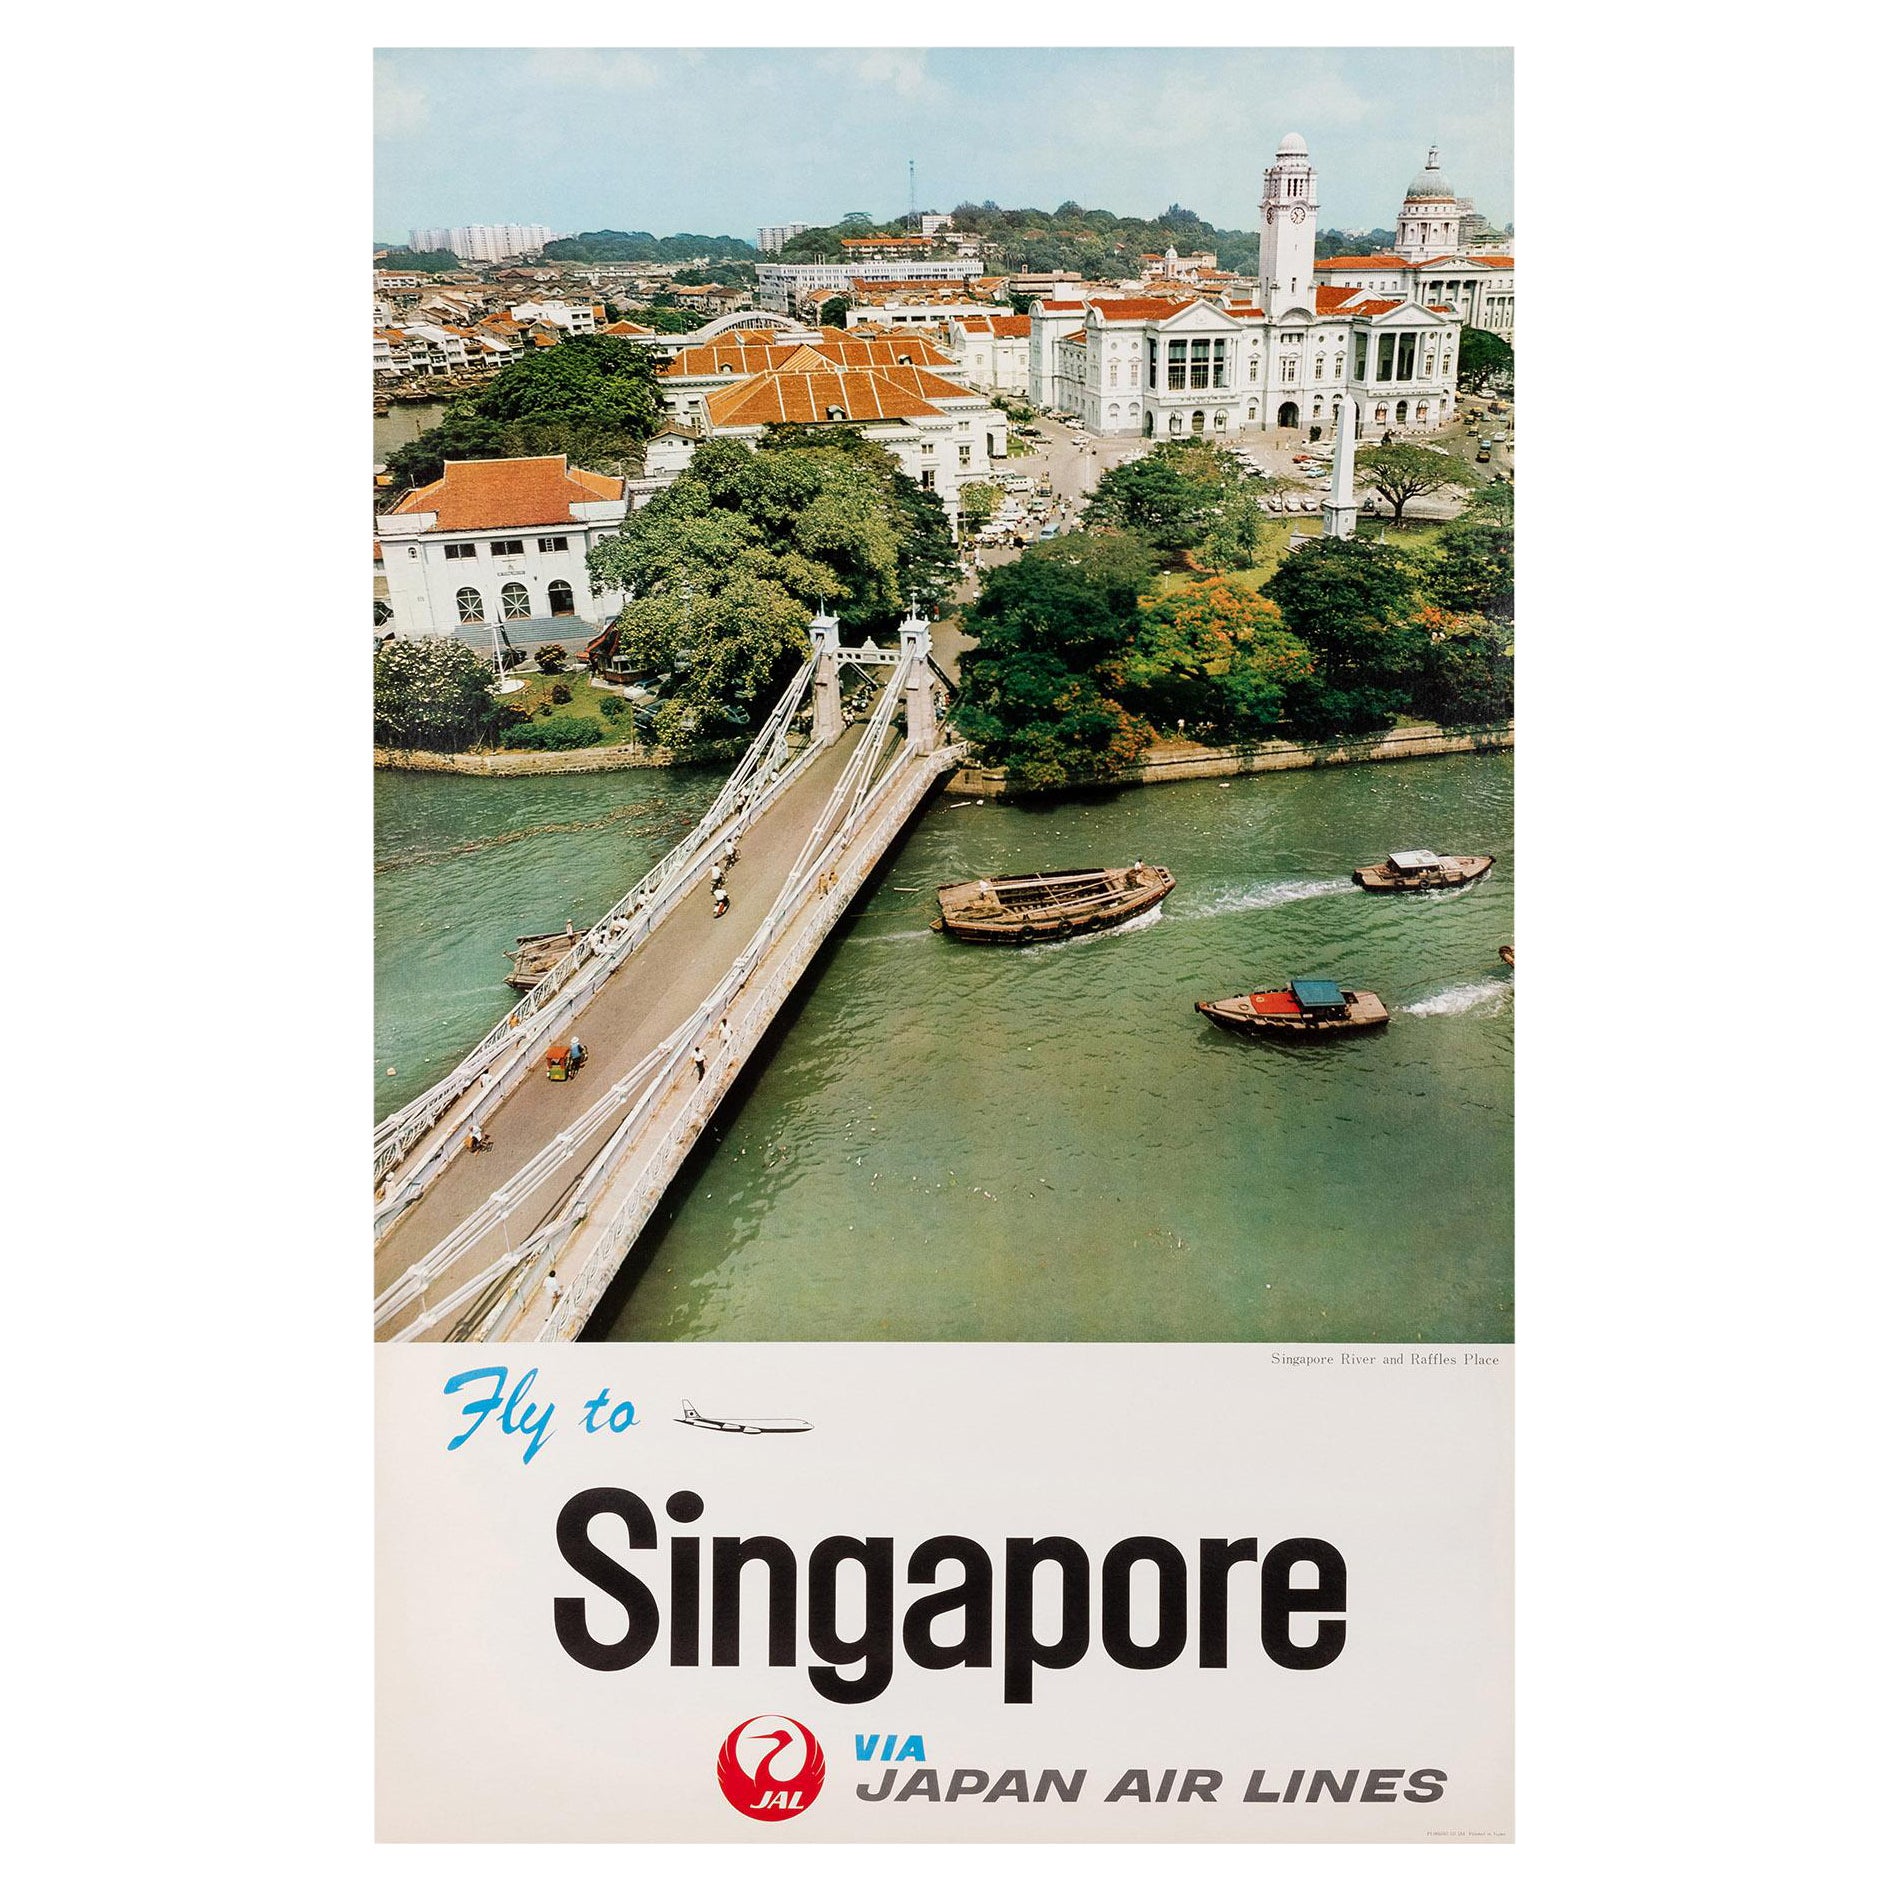 Cartel antiguo de Japan Air Lines con el río Singapur y Raffles, ca.1960